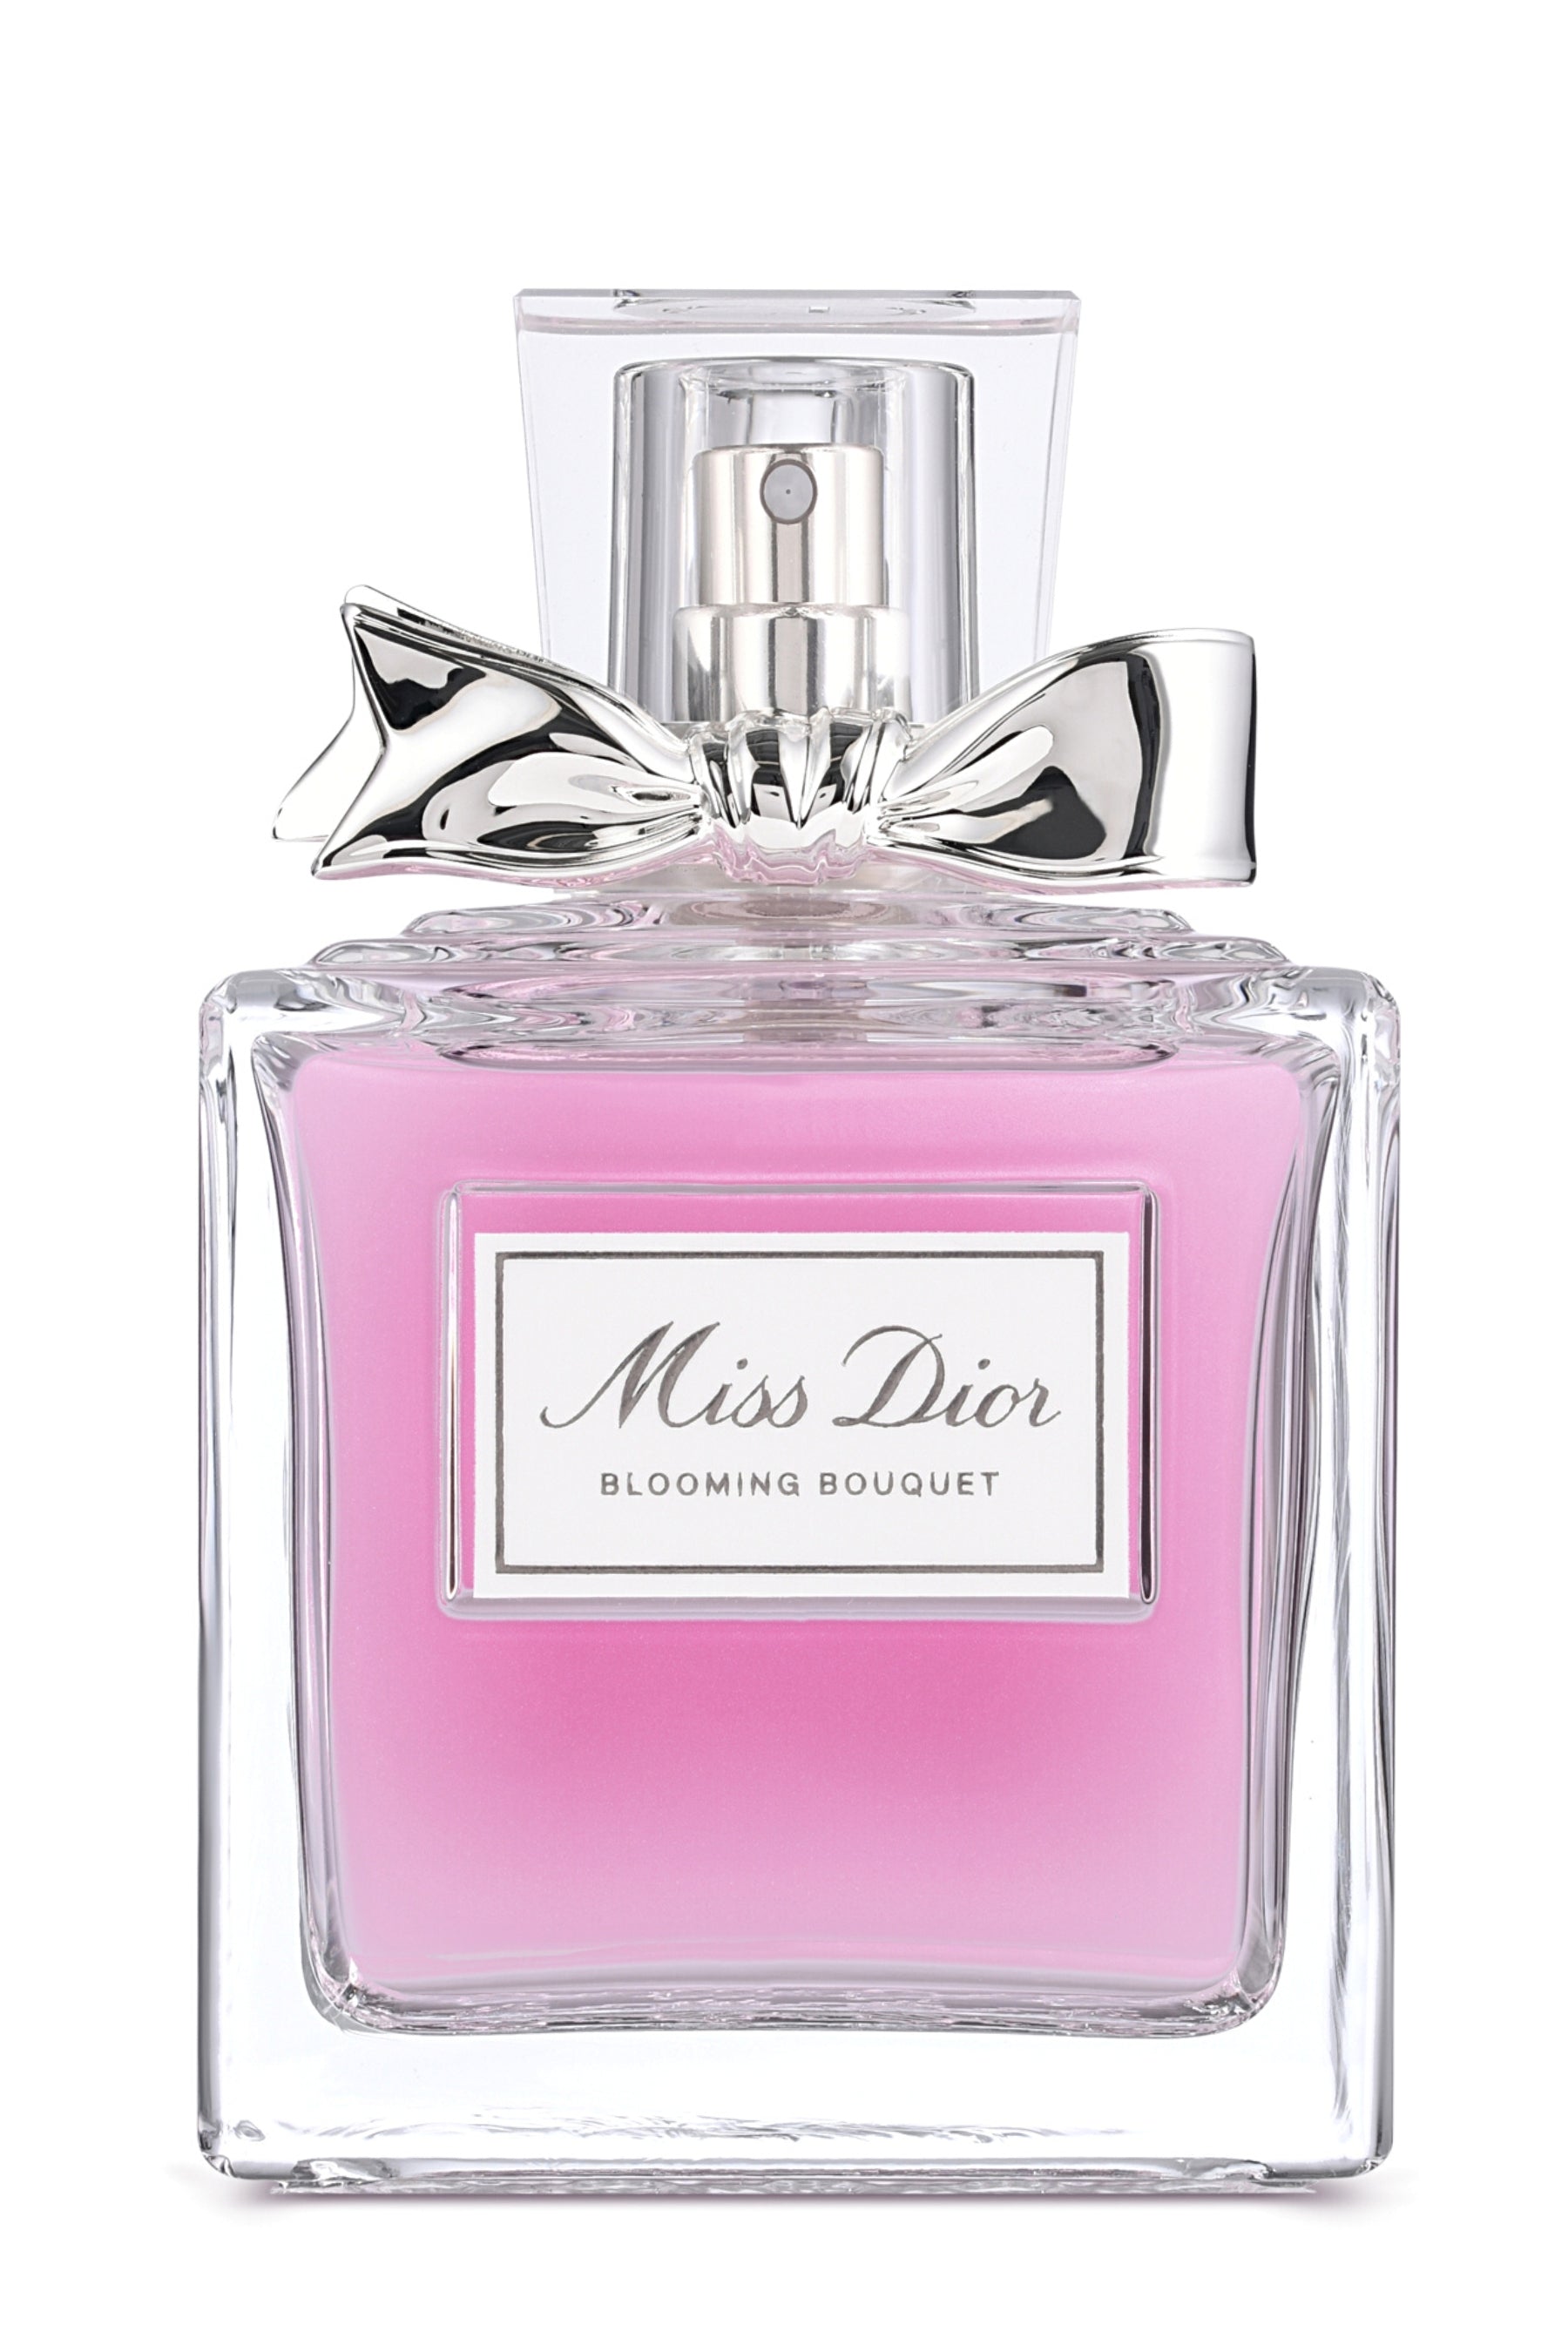 Christian Dior Miss Dior Blooming Bouquet 100ML 3.4 oz Eau de Toilette Spray